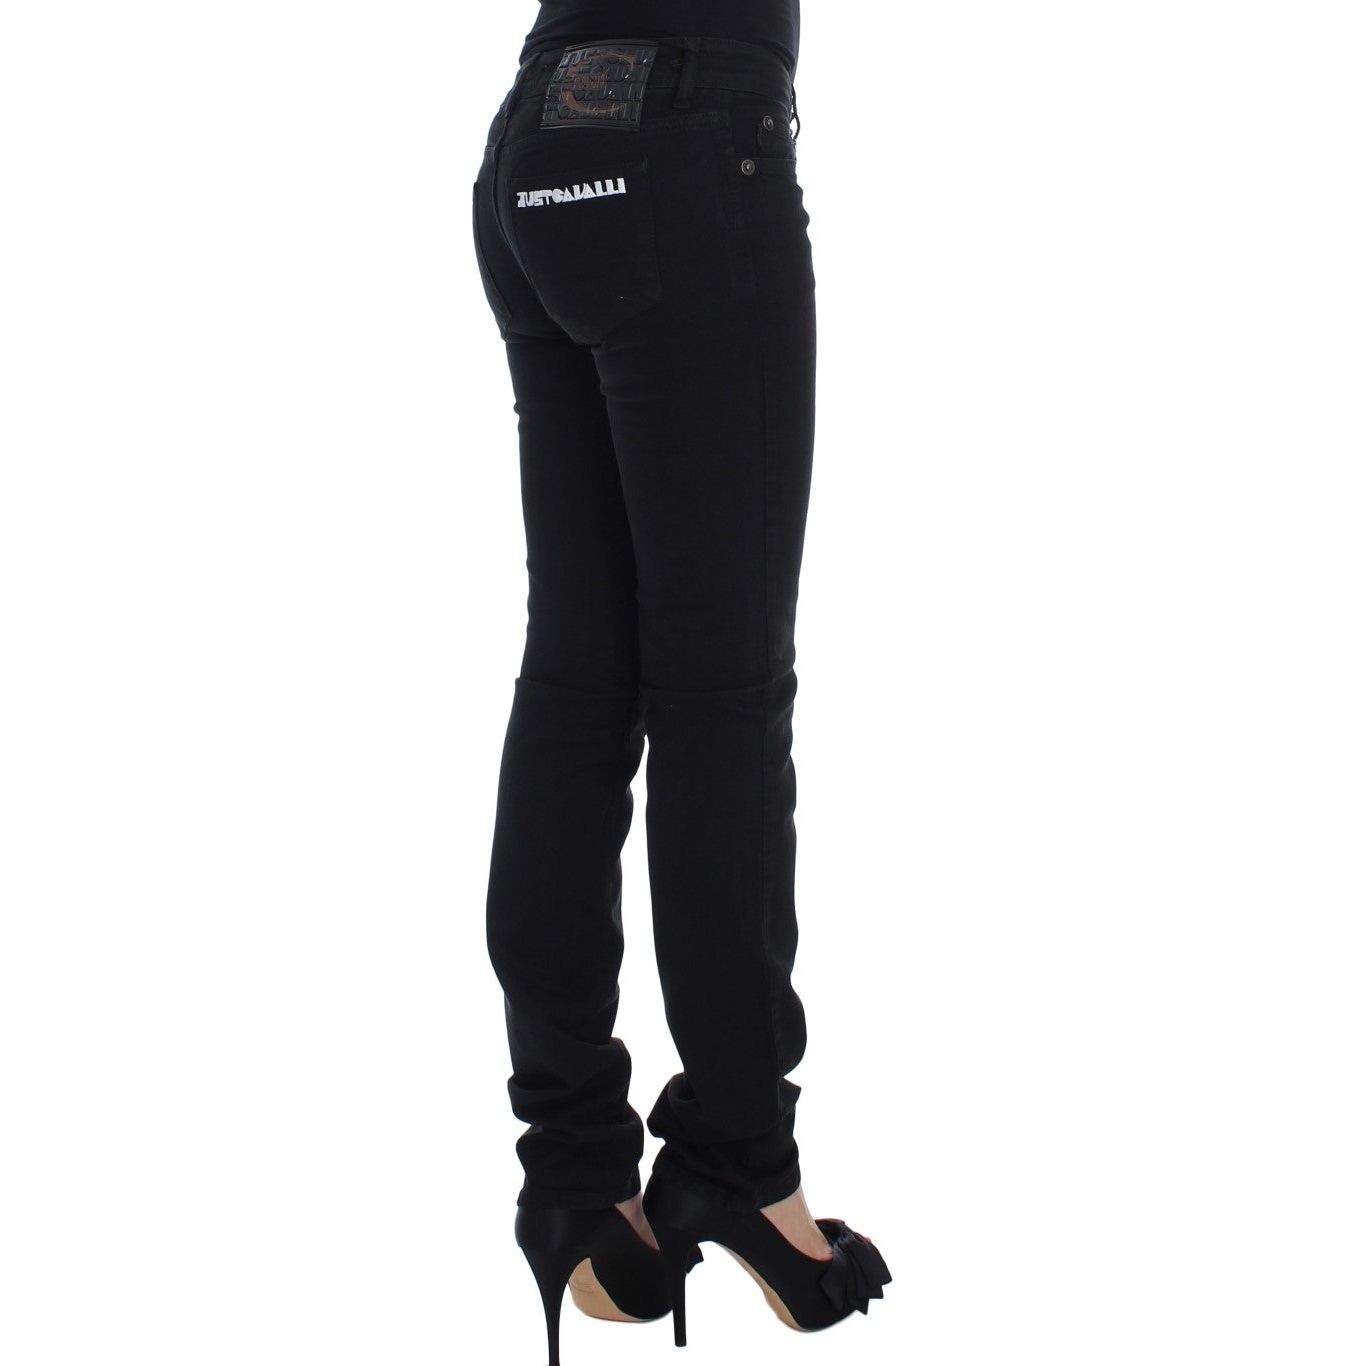 Cavalli Chic Slim Skinny Black Jeans black-cotton-stretch-slim-skinny-fit-jeans Jeans & Pants 60937-black-cotton-stretch-slim-skinny-fit-jeans-3.jpg